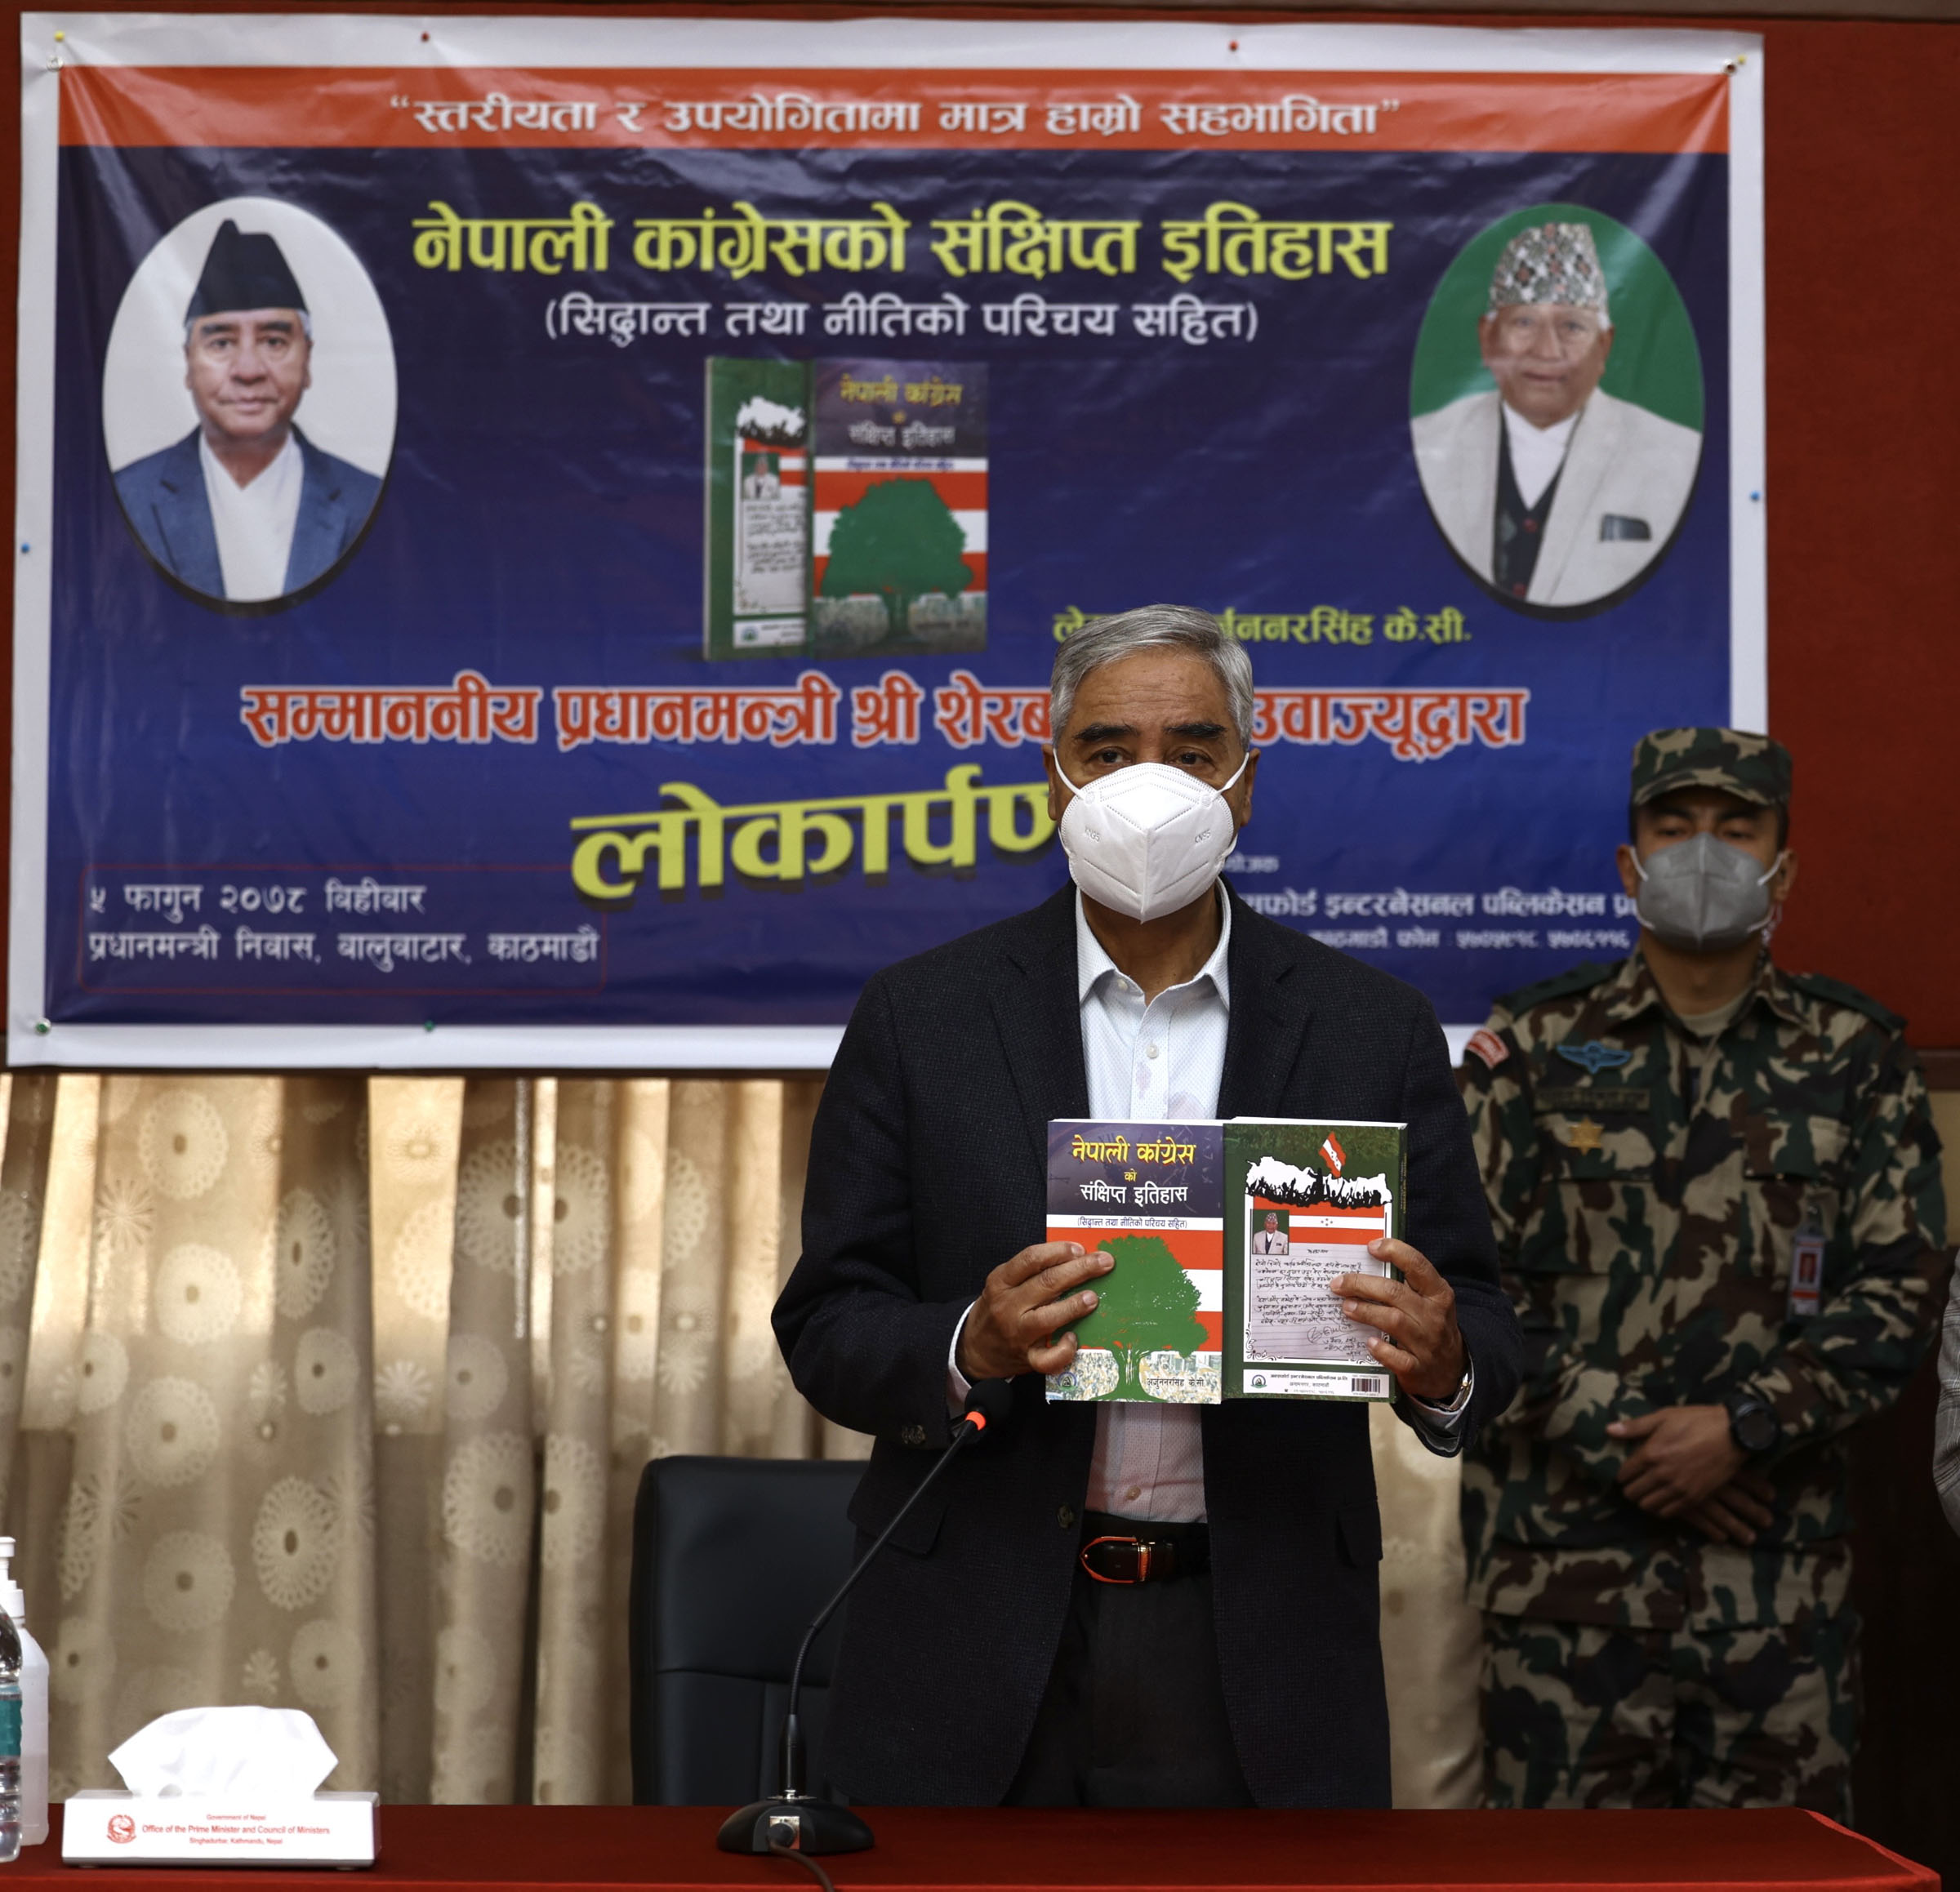 मुलुकमा नेपाली कांग्रेसको योगदानको प्रचार गर्नुपर्छ: प्रधानमन्त्री देउवा